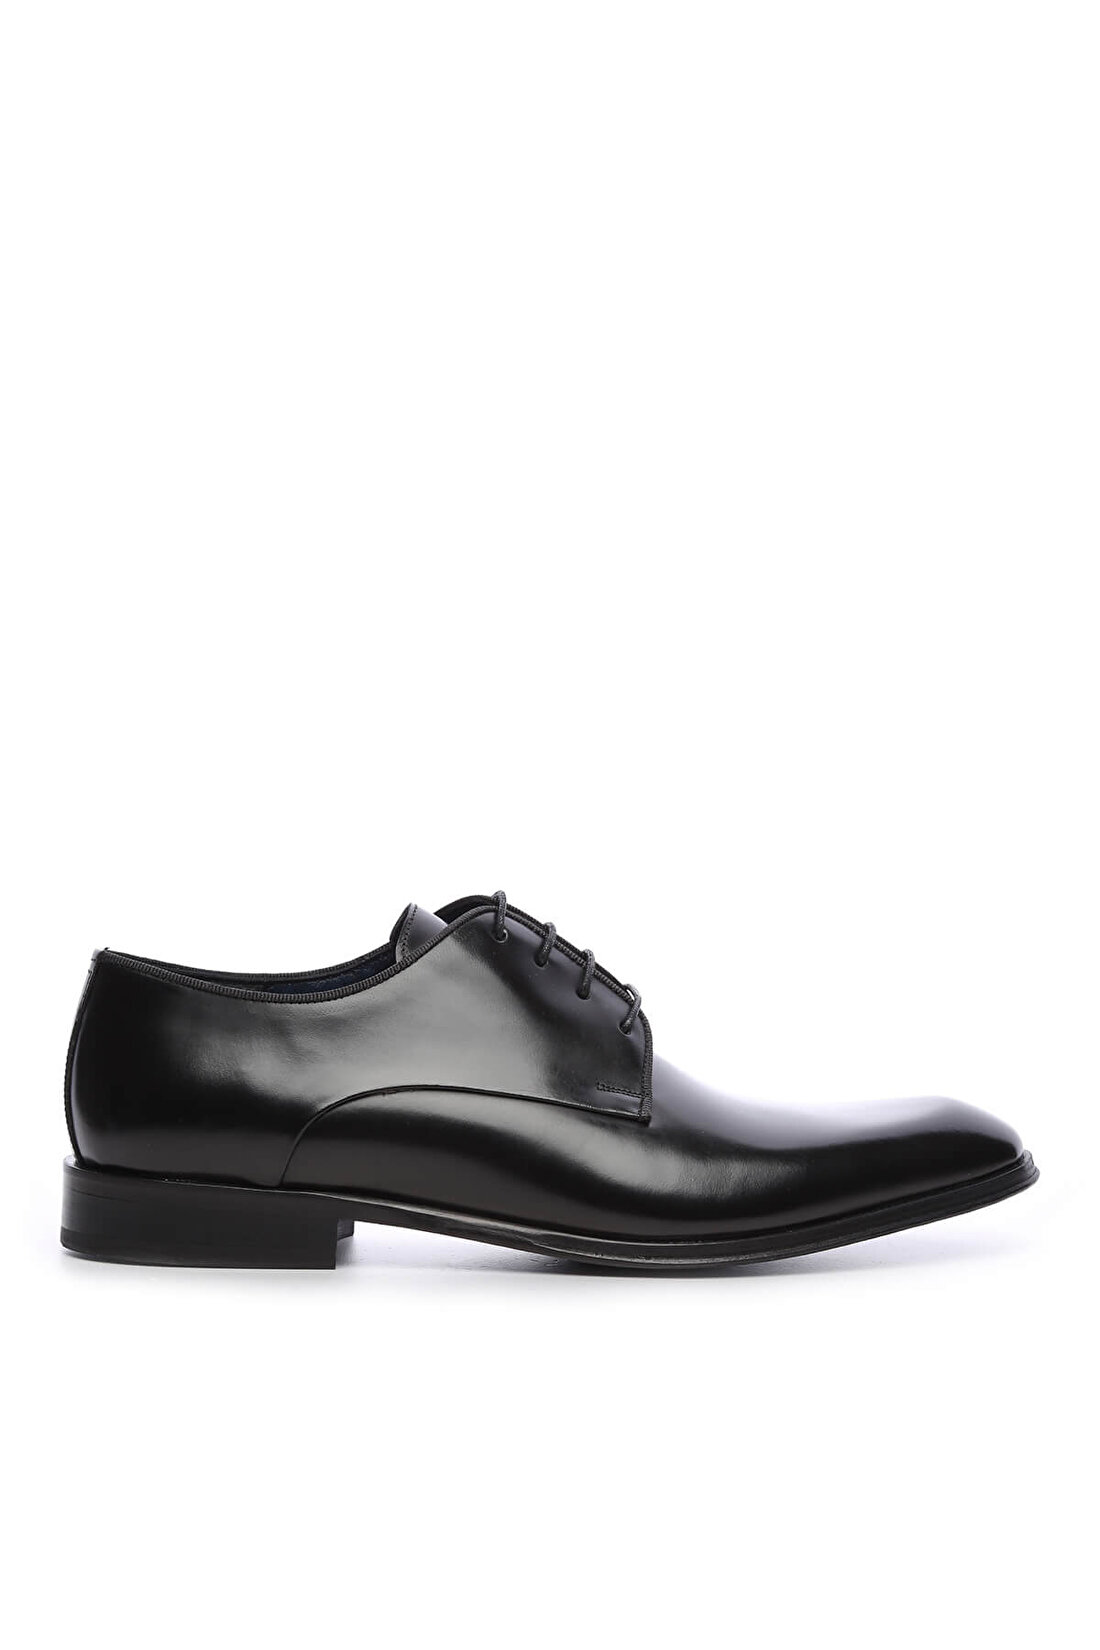 Tamer Tanca Erkek Hakiki Deri Siyah Açma Klasik Ayakkabı